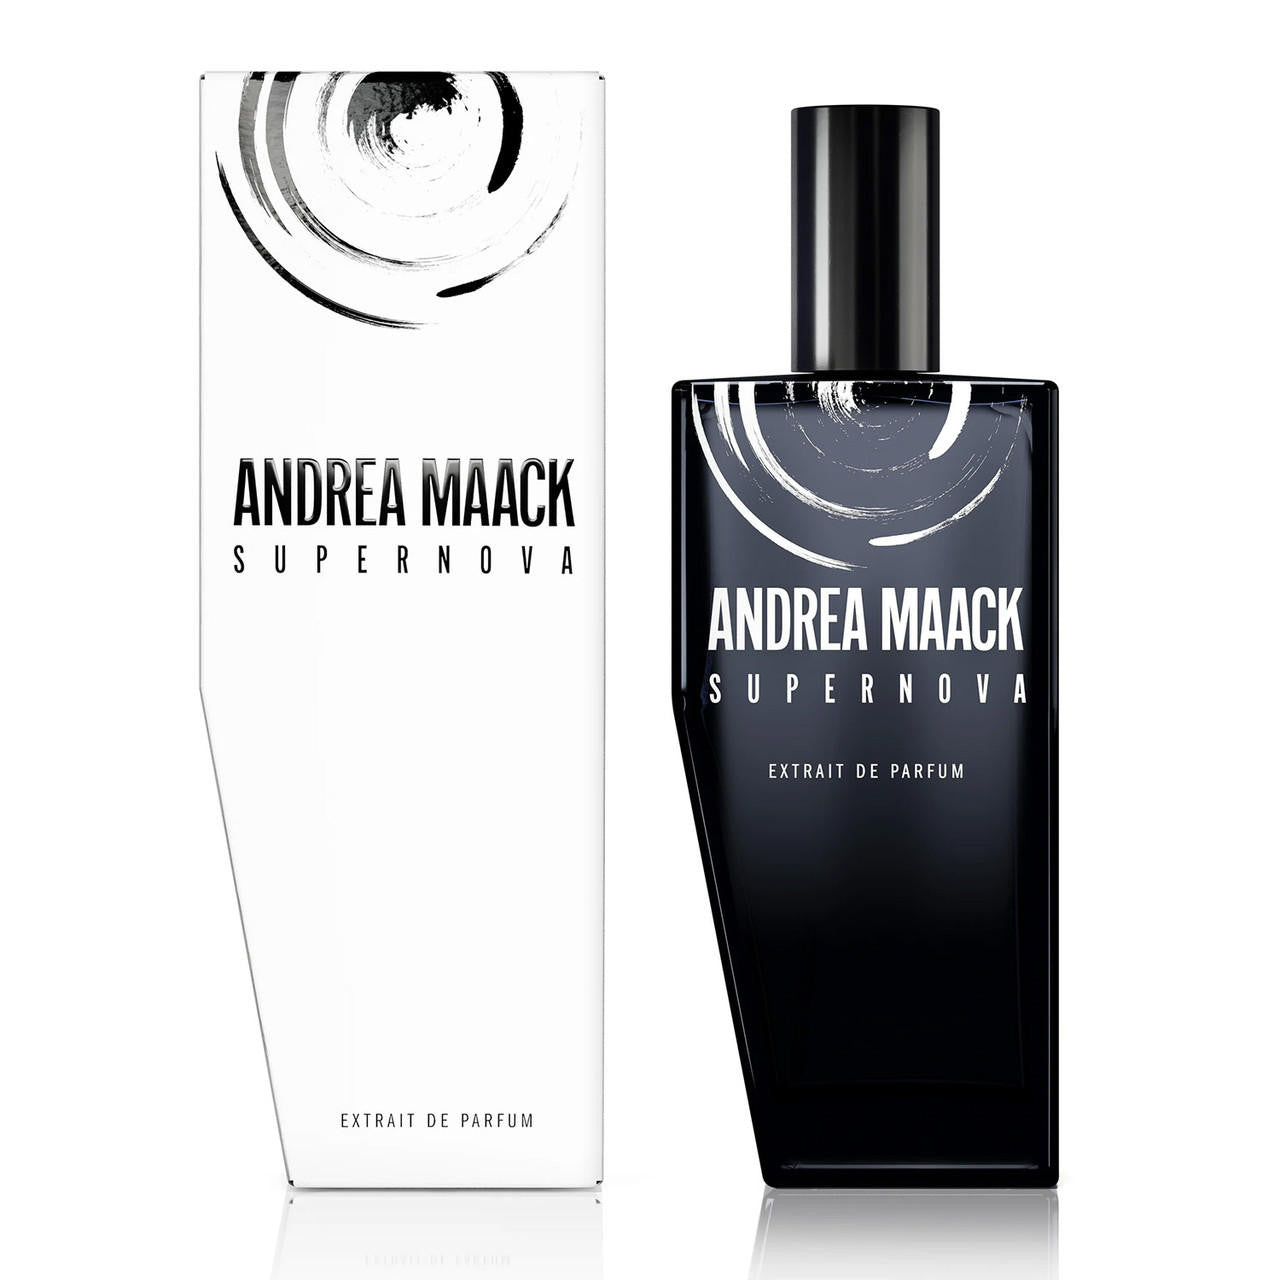 ANDREA MAACK Supernova Extrait de Parfum